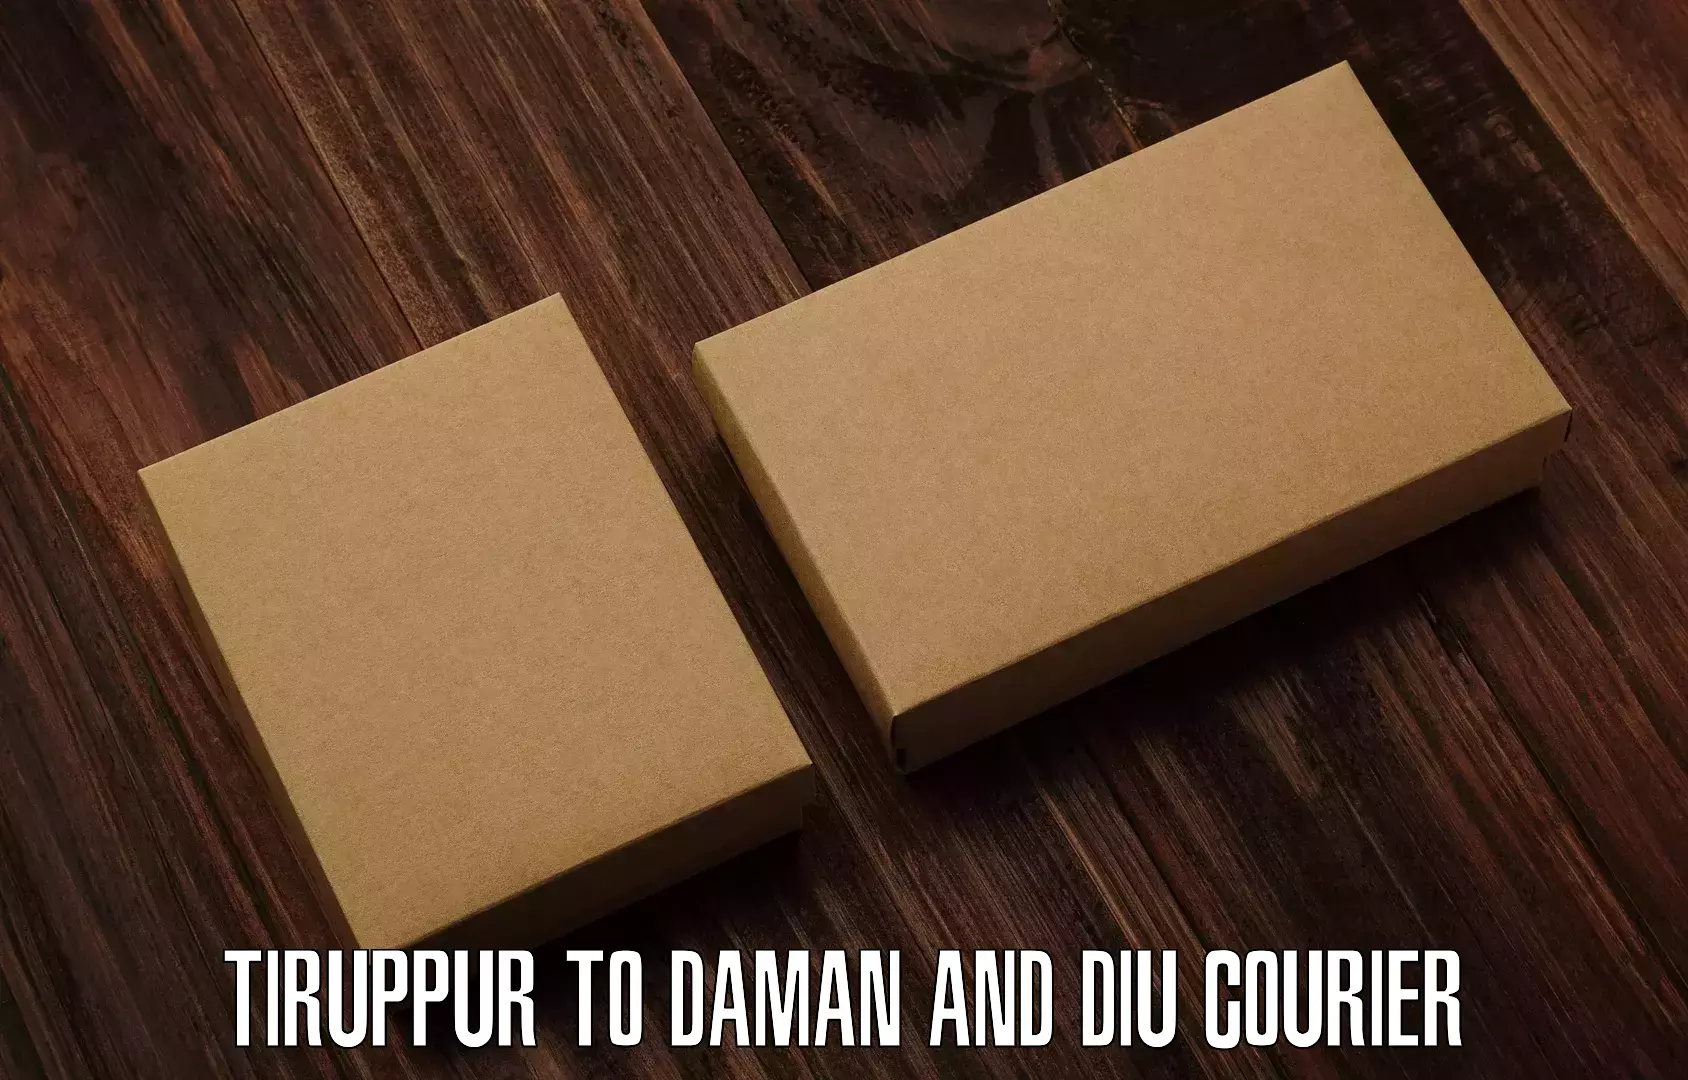 Efficient freight transportation Tiruppur to Daman and Diu